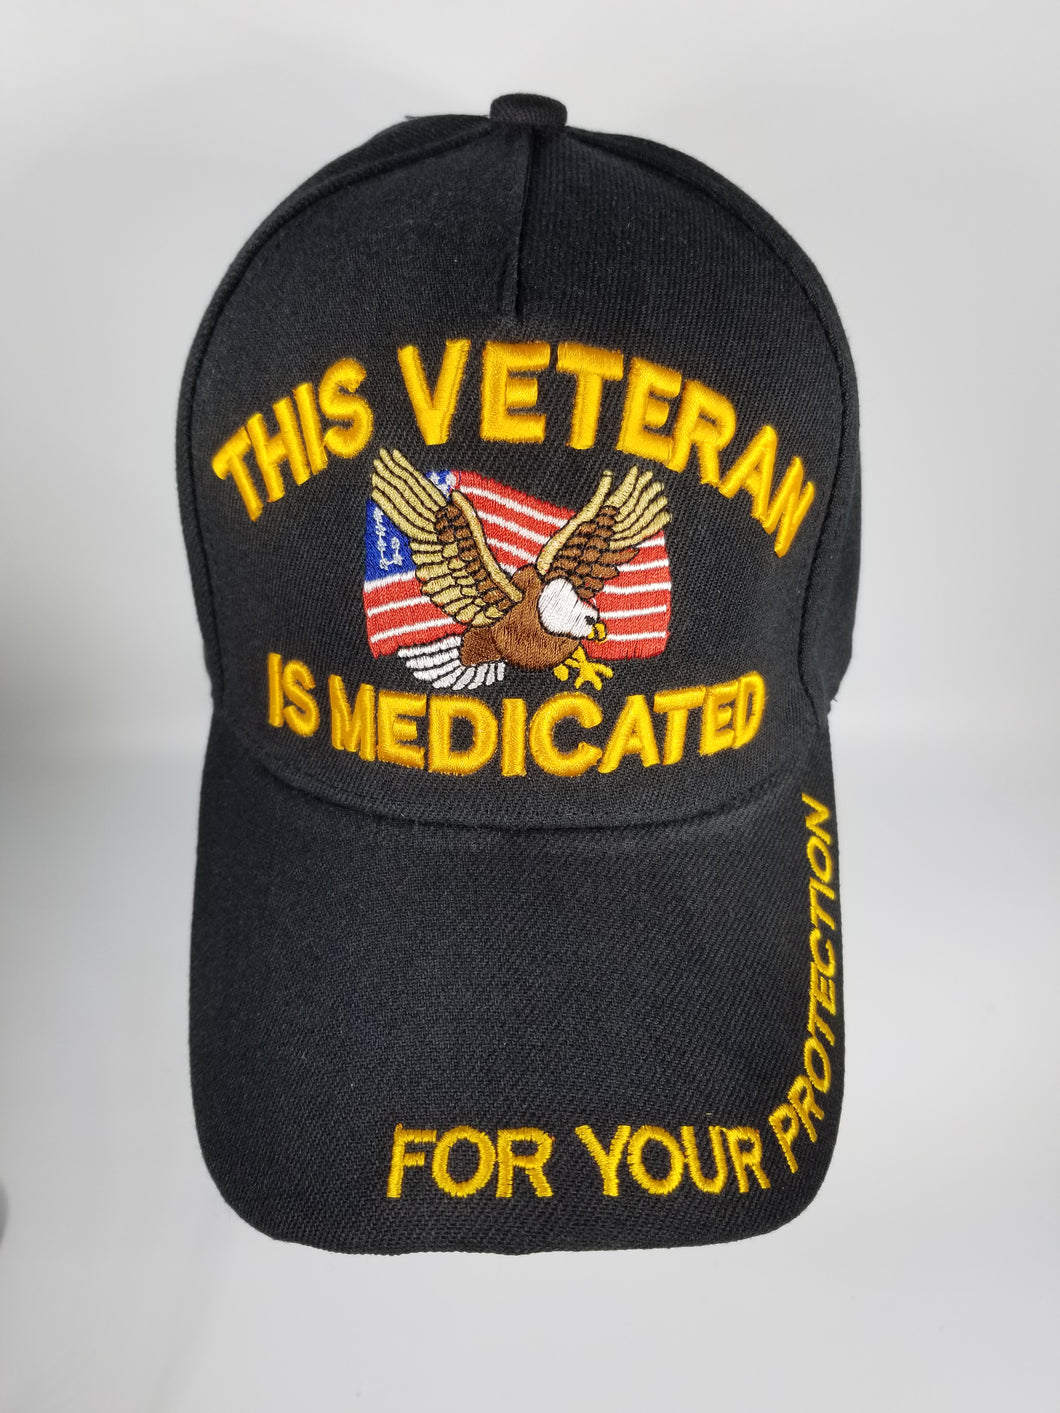 This Veteran is Medicated Cap